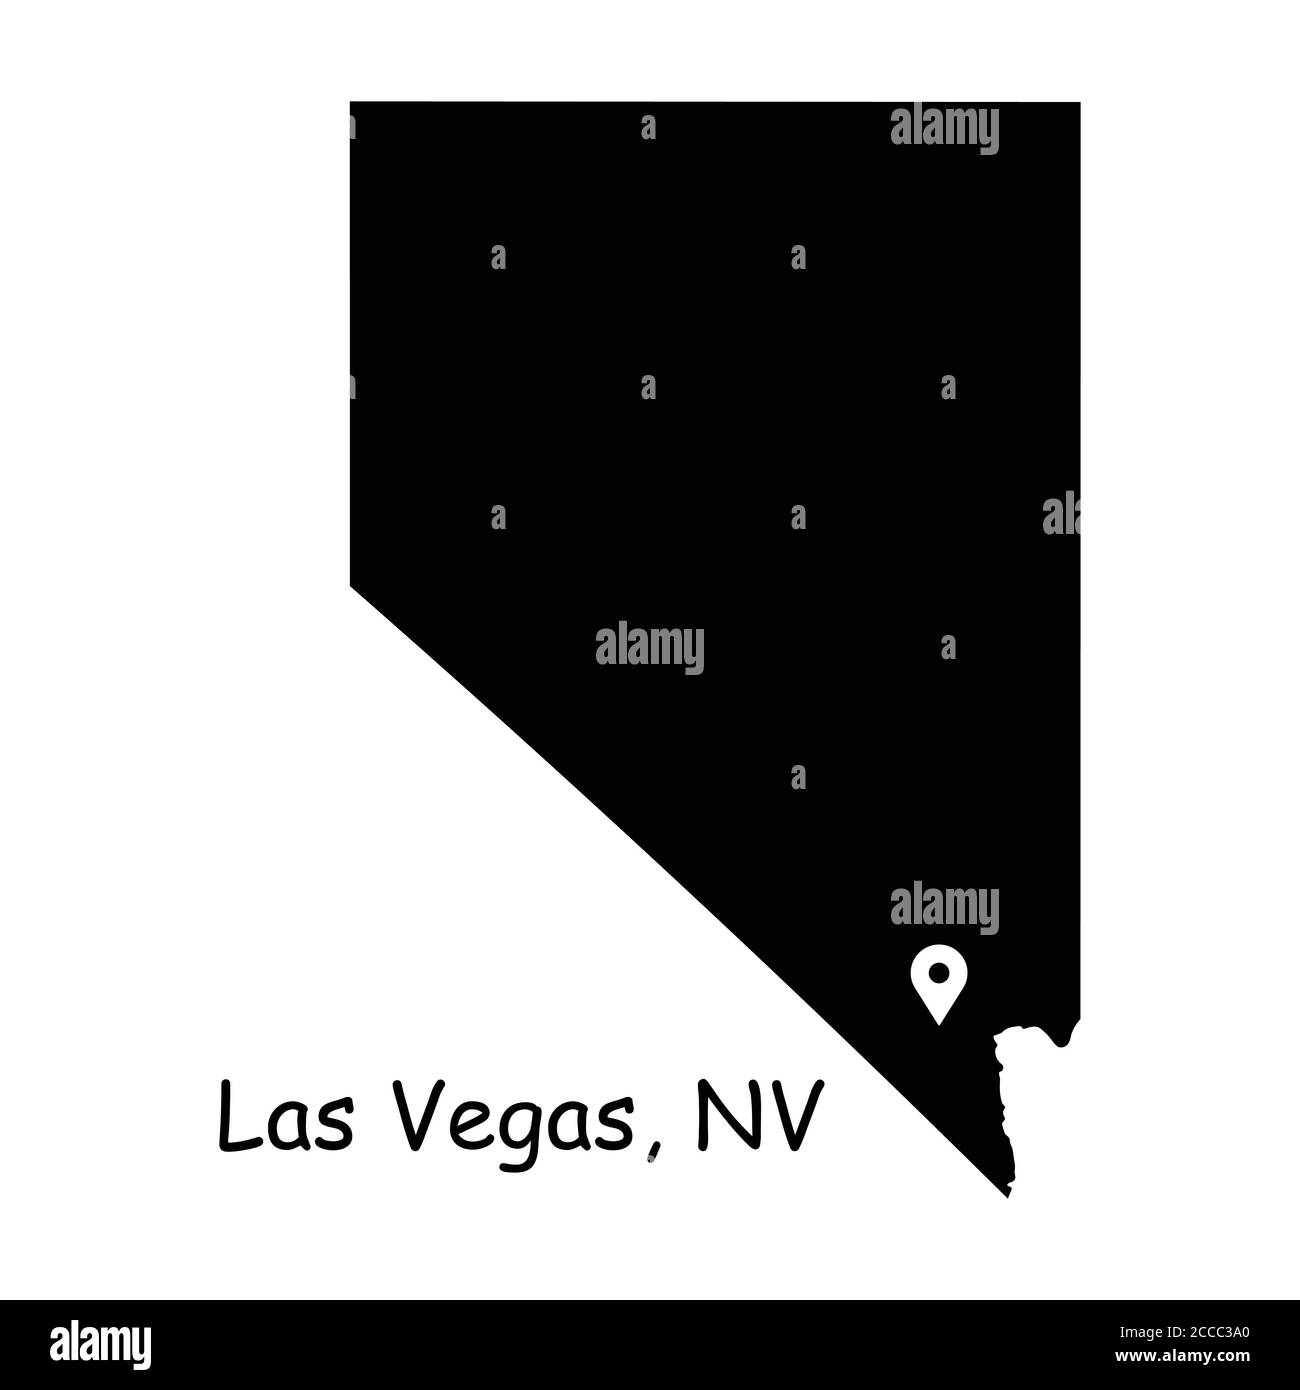 Las Vegas auf Nevada State Map. Detaillierte NV State Map mit Location Pin auf Las Vegas City. Schwarze Silhouette Vektorkarte isoliert auf weißem Hintergrund. Stock Vektor